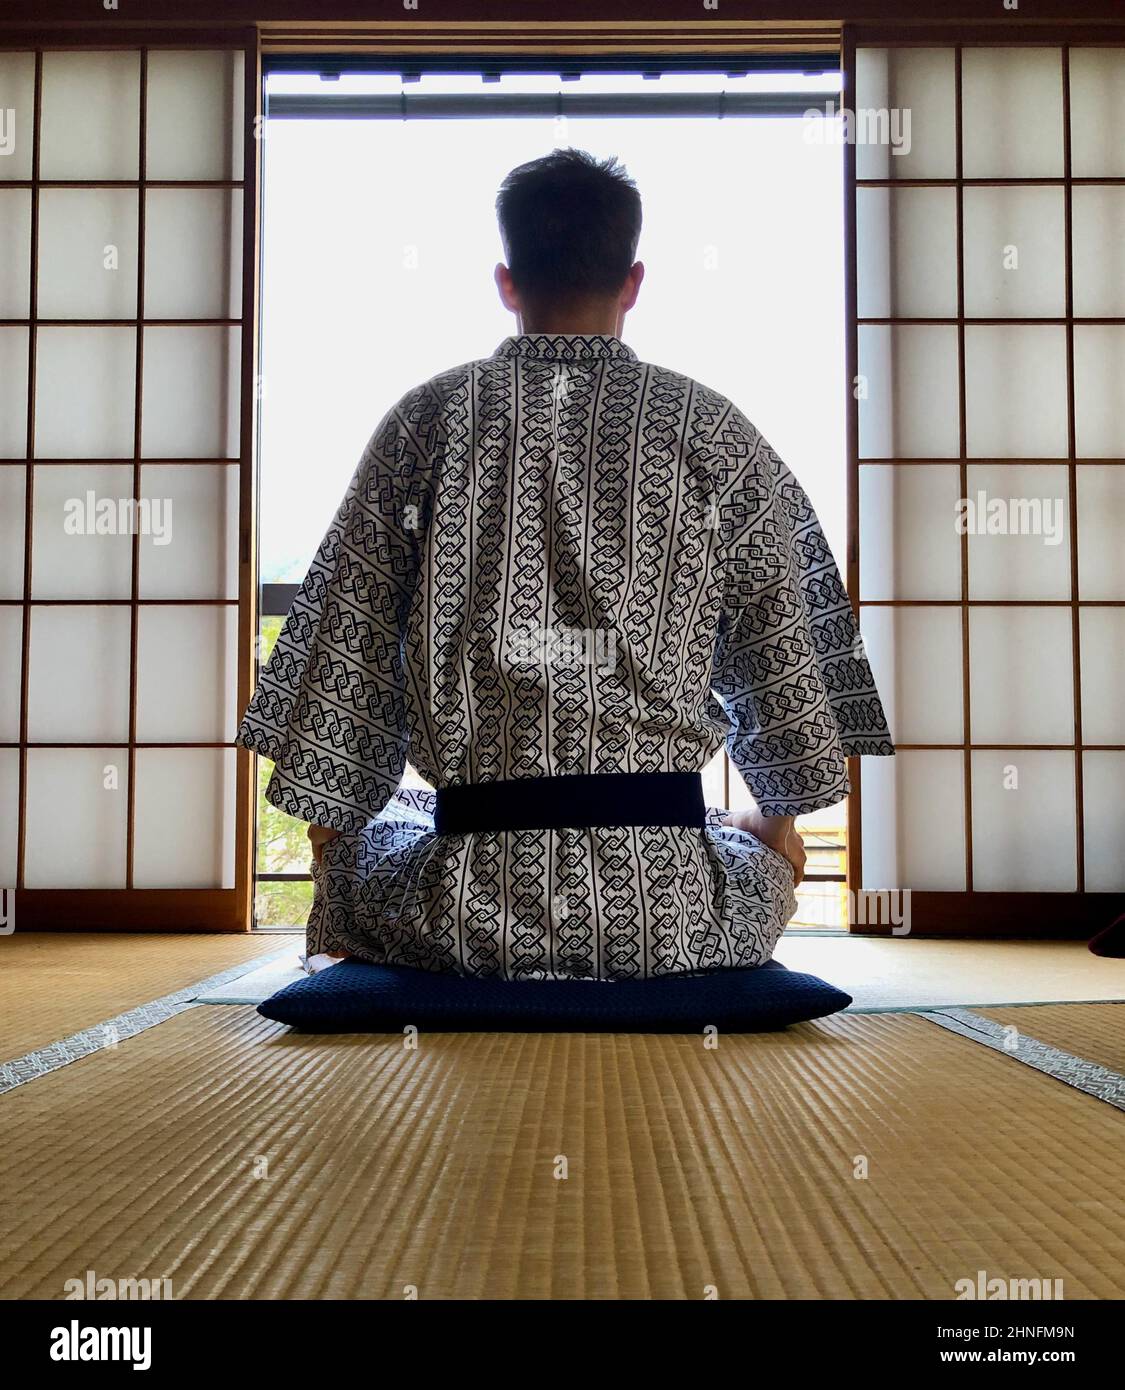 Jeune homme dans un kimono de derrière, méditant, dans une maison japonaise traditionnelle, Yamanouchi, préfecture de Nagano, île Honshu, Japon Banque D'Images